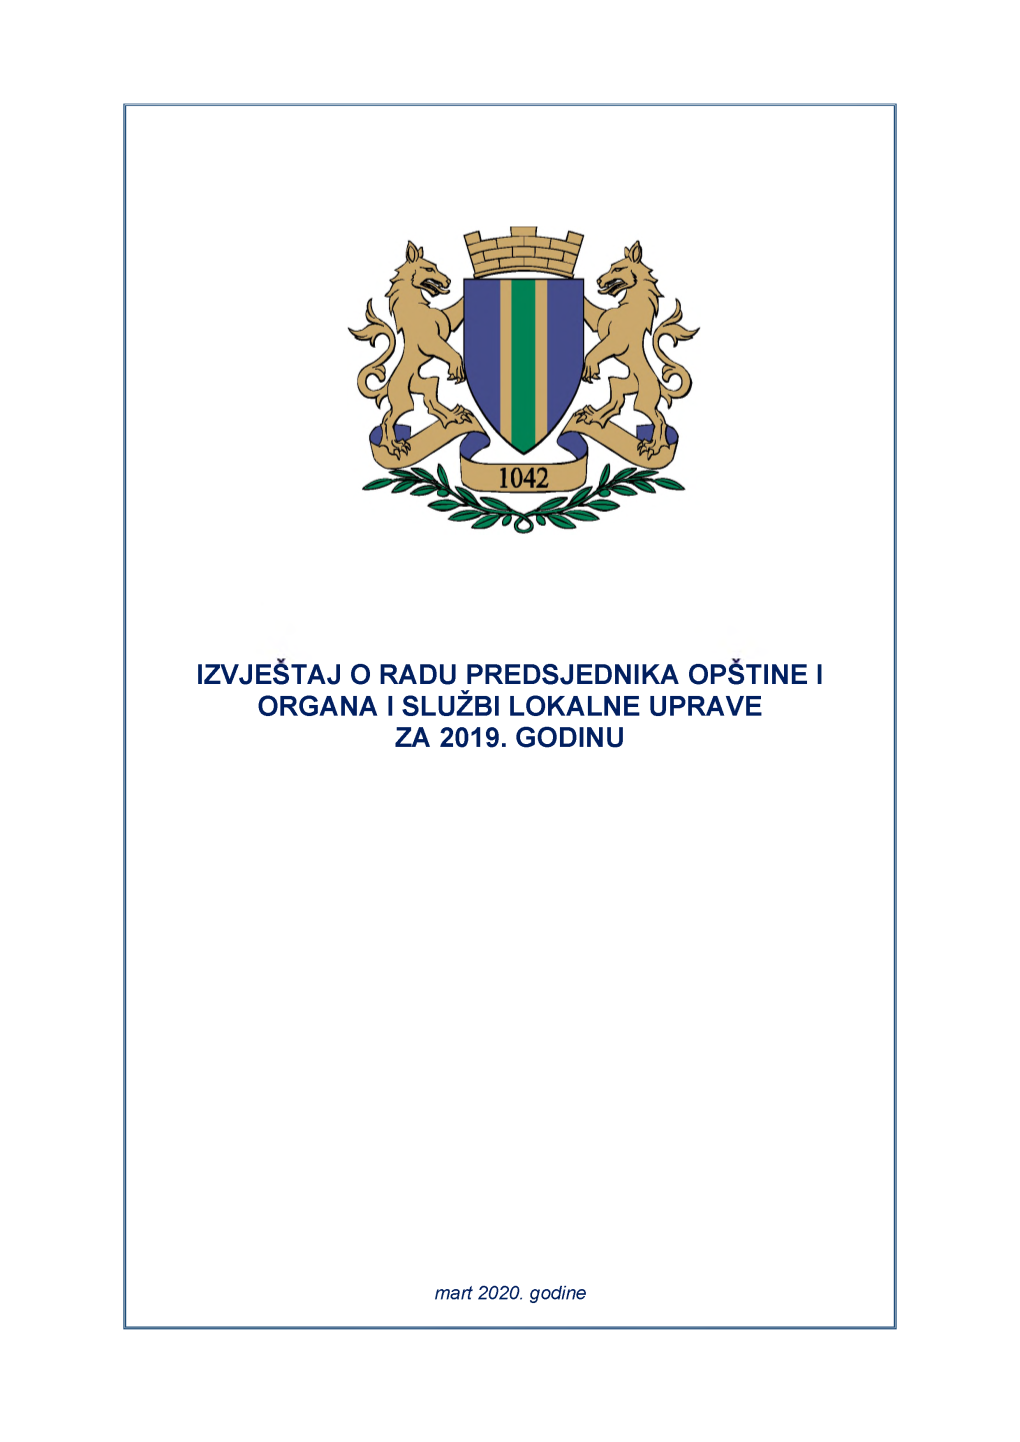 Izvještaj O Radu Predsjednika Opstine I Organa I Službi Lokalne Uprave Za 2019